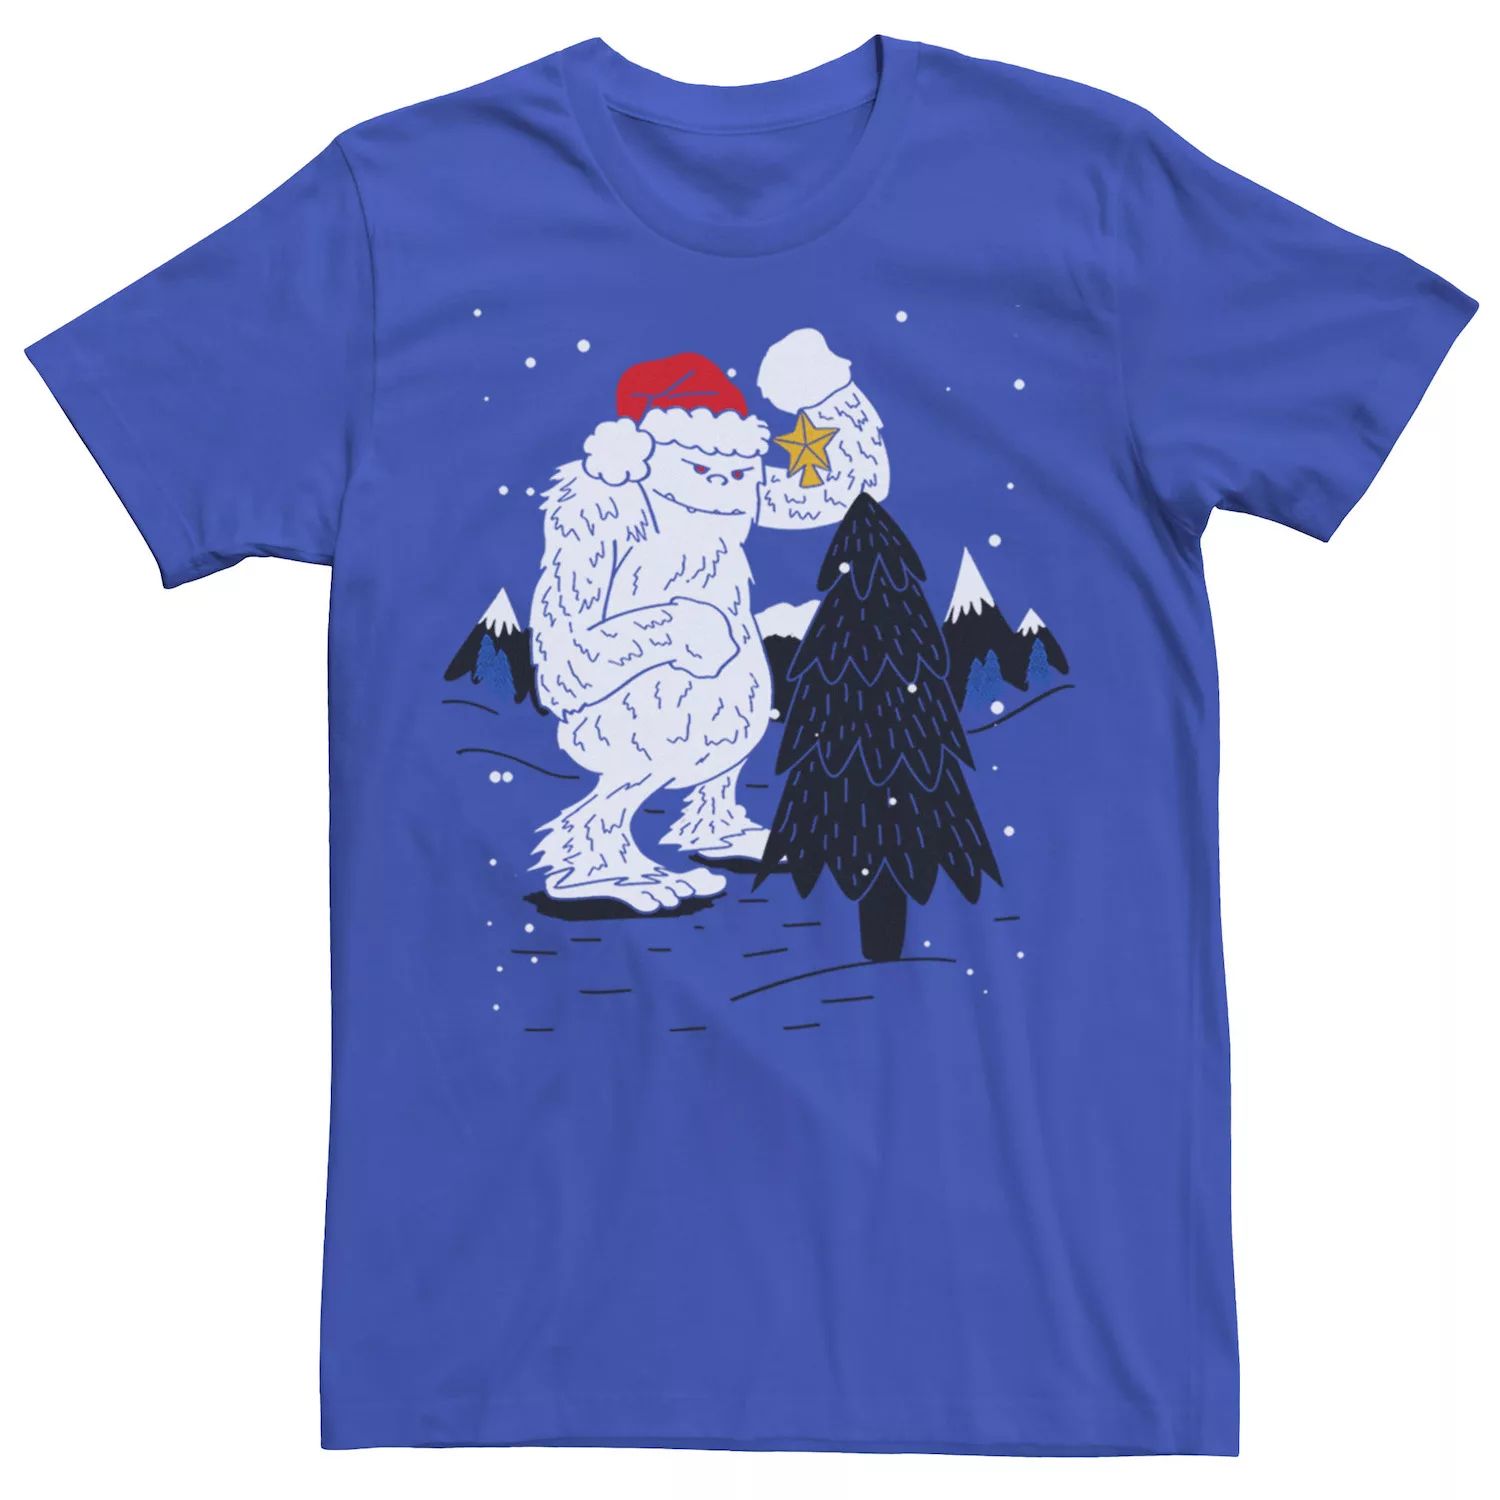 Мужская снежная футболка с украшением в виде рождественской елки и звезды Йети Licensed Character